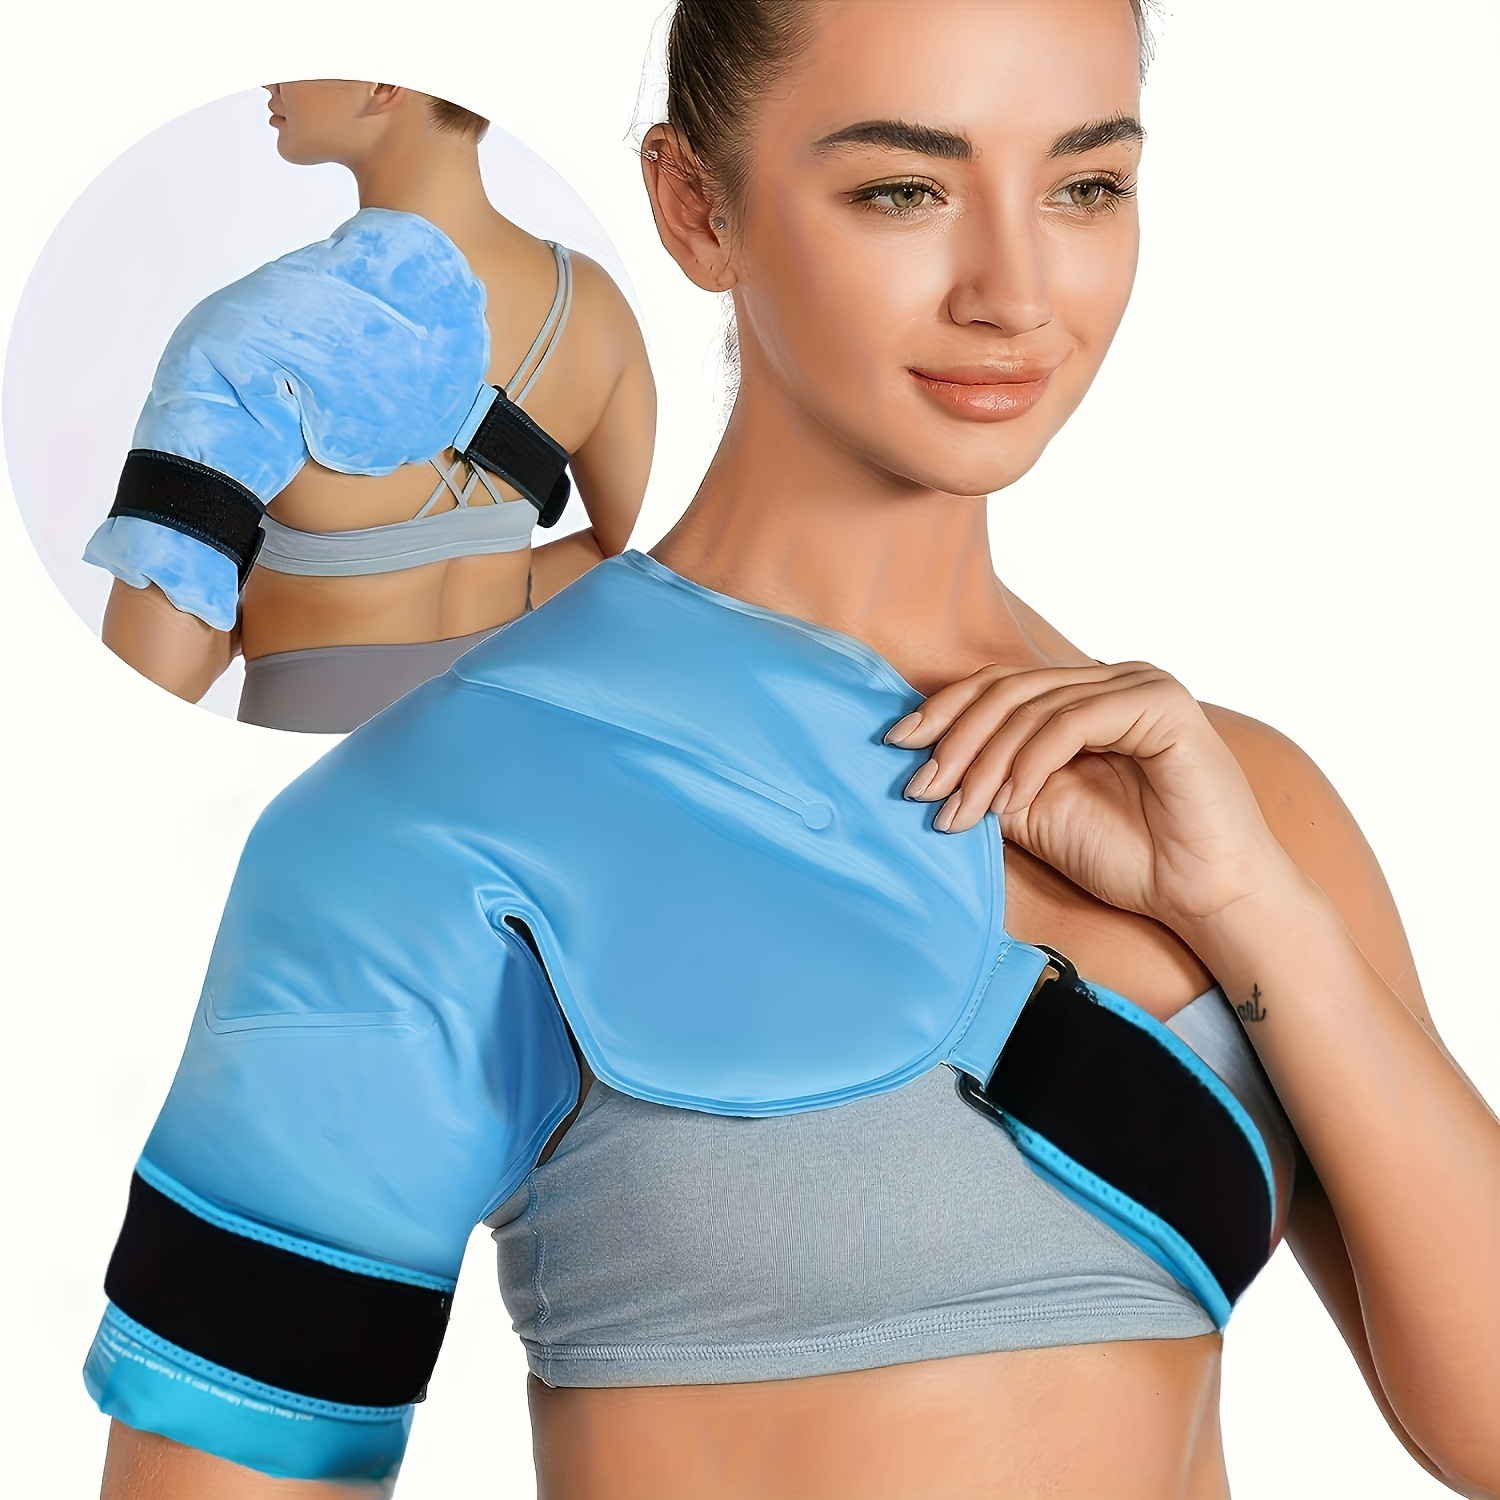 bolsa de hielo para lesiones – Compra bolsa de hielo para lesiones con  envío gratis en AliExpress version